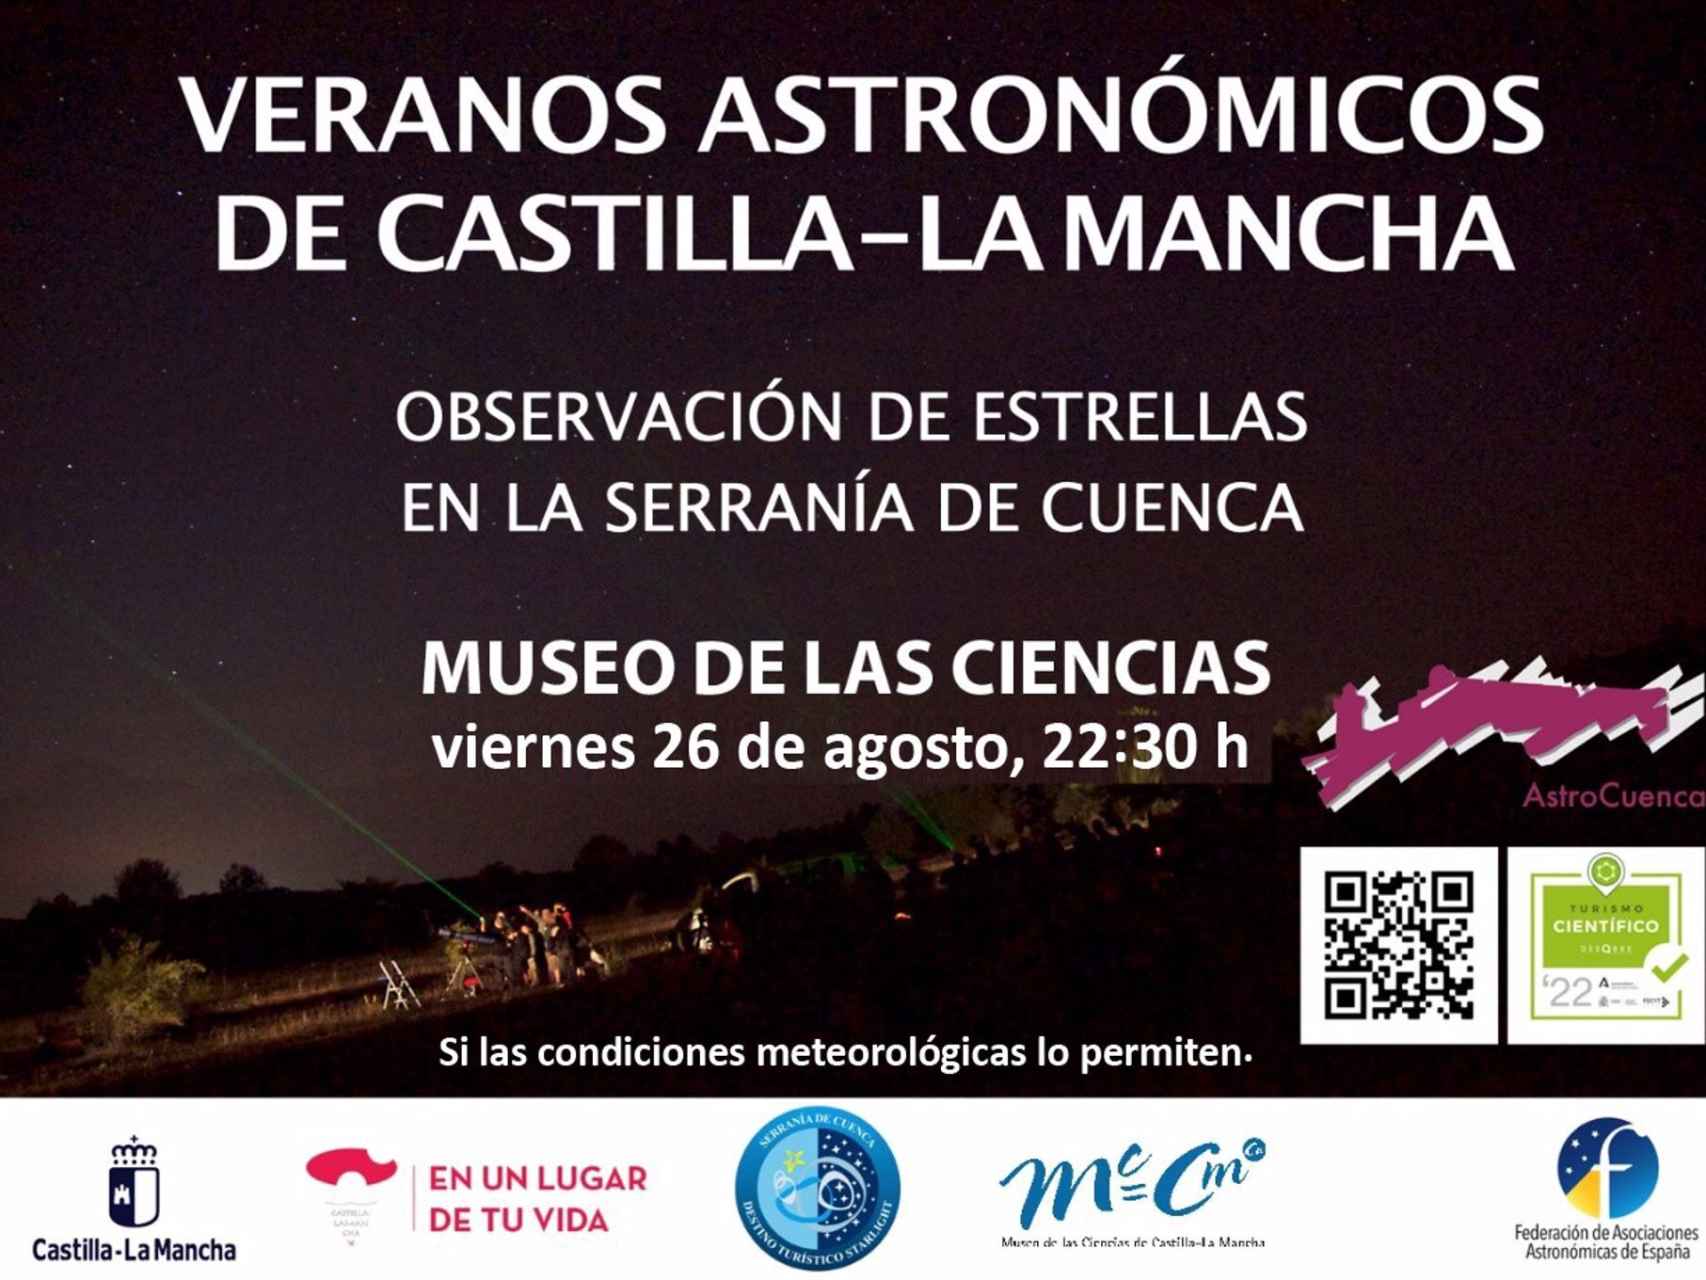 Cartel del Verano Astronómico de Castilla-La Mancha